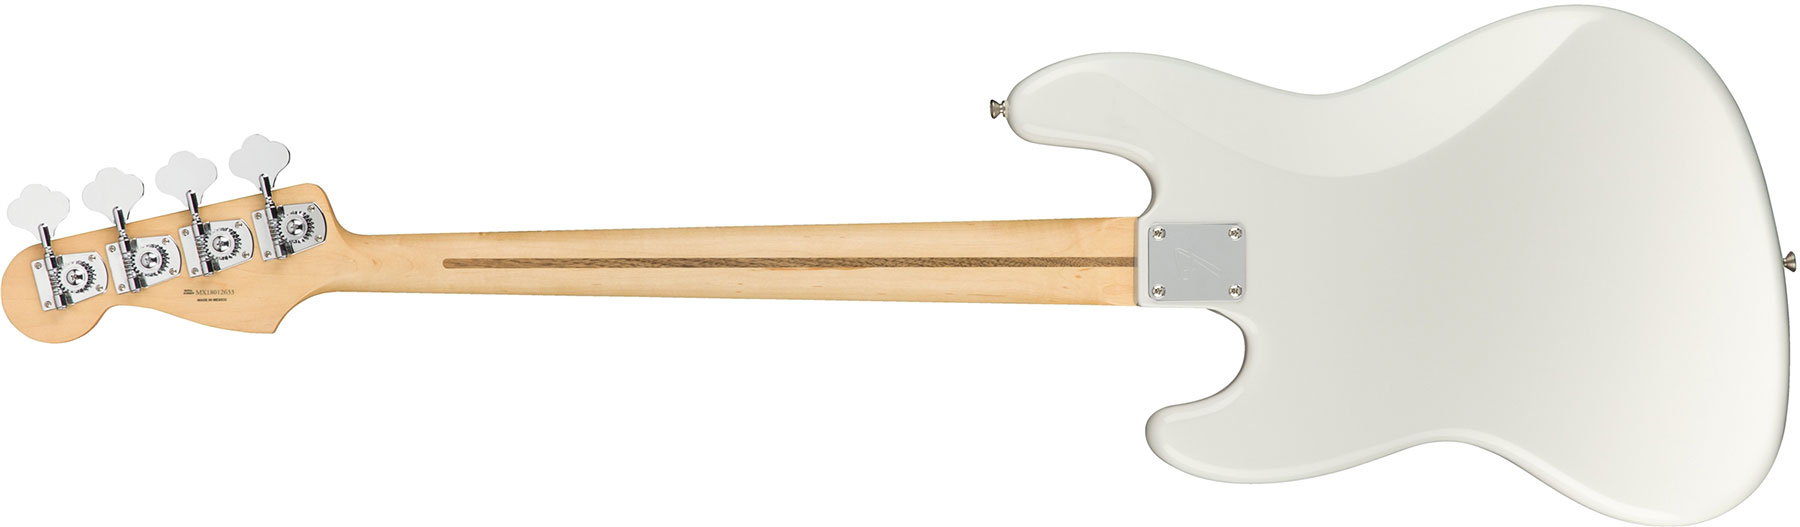 Fender Jazz Bass Player Mex Pf - Polar White - Solid body elektrische bas - Variation 1